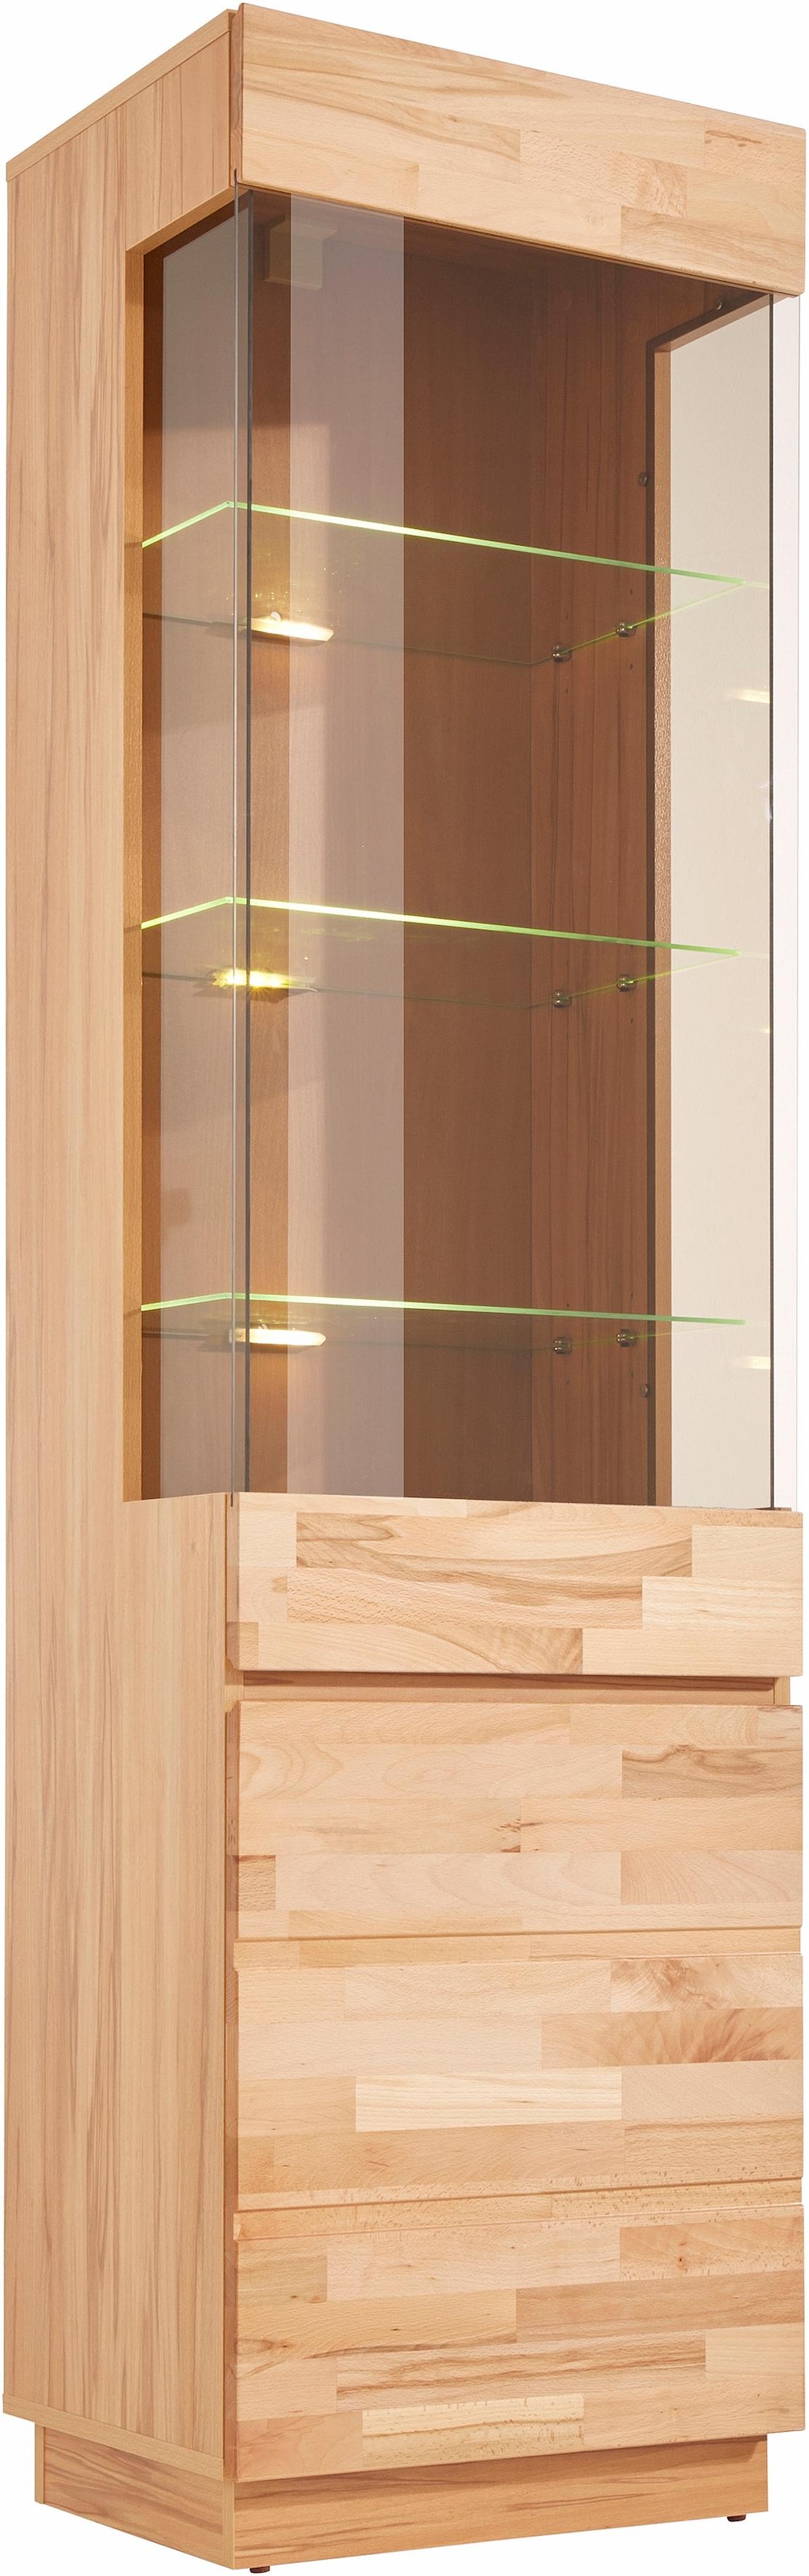 Home affaire Vitrine, Höhe 184 cm, Türen aus Massivholz, mit Glaseinsatz